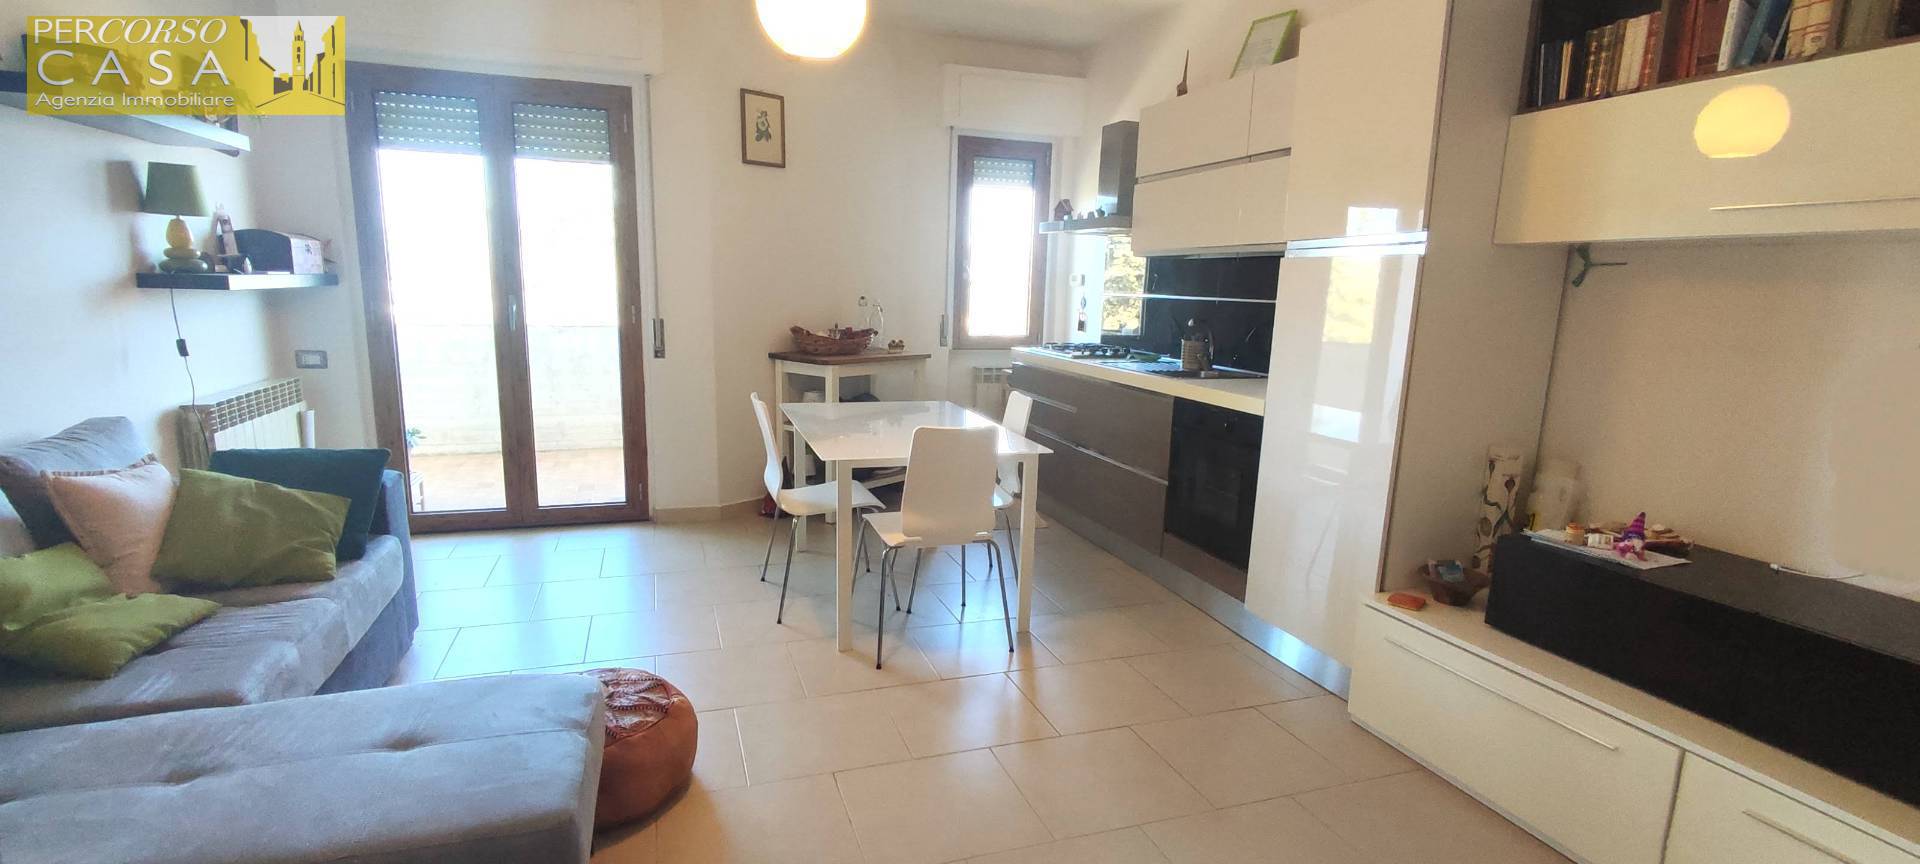 Appartamento in vendita a Torricella Sicura, 4 locali, prezzo € 85.000 | PortaleAgenzieImmobiliari.it